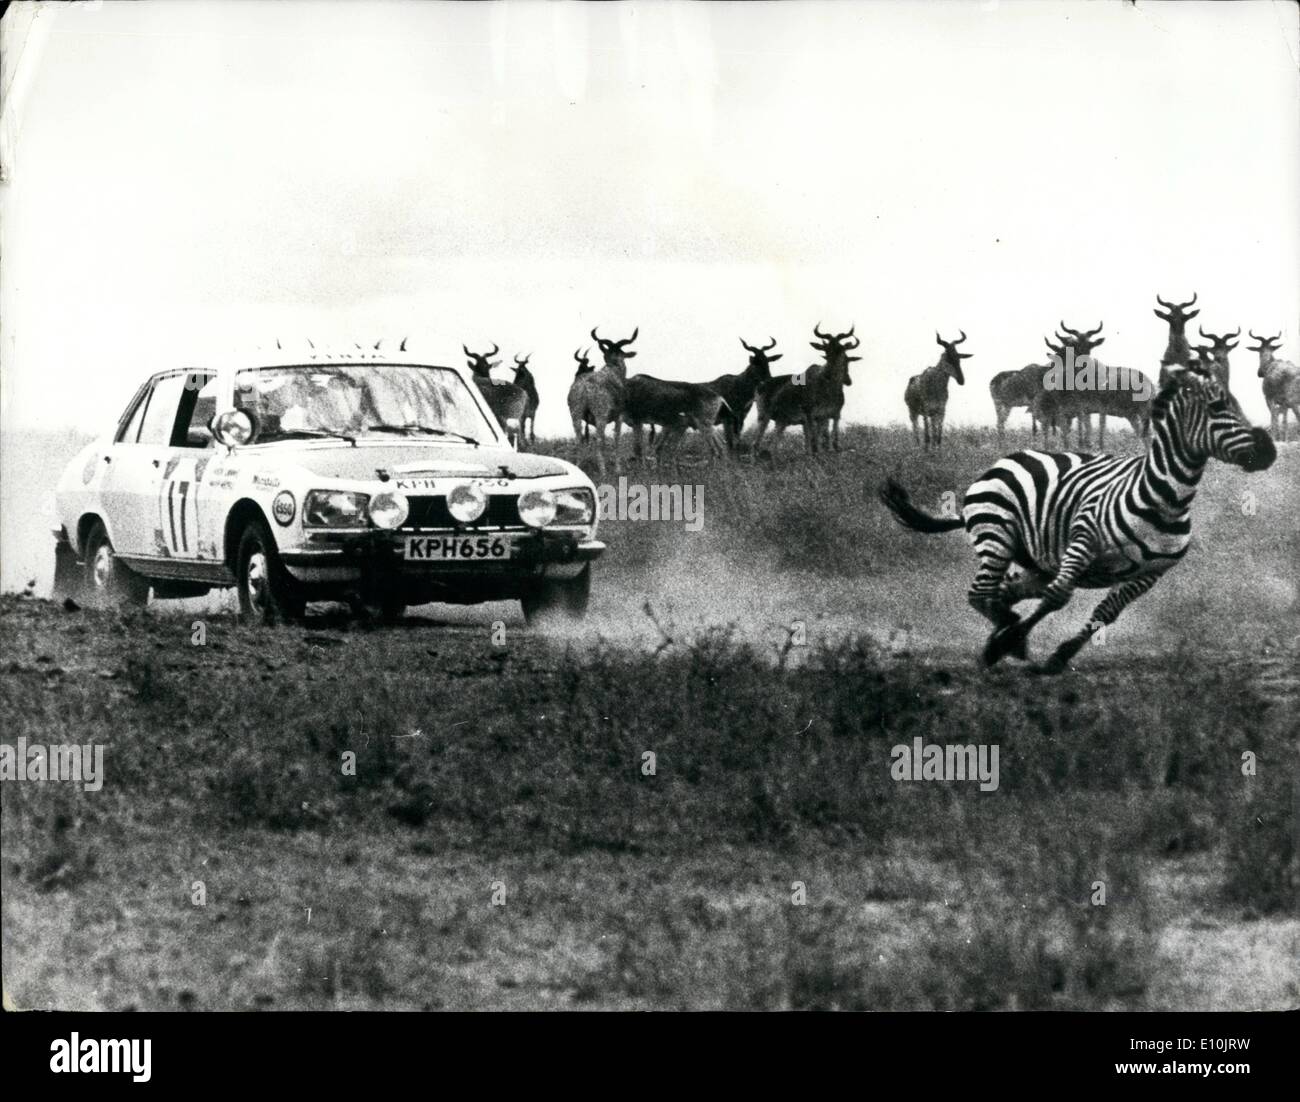 23 avril 1973 - 23 avril 1973 Shekhar Mehta du Kenya remporte l'East African Safari Rallye automobile. Shekhar Mehta du Kenya, avec co-pilote nobles Drews, à la conduite d'une Datsun 240Z a remporté le 21e Rallye automobile de l'Afrique de l'est dans une finition très proche avec pilote suédois Harry Kallstrom, également au volant d'une Datsun. Photo montre : un danger constant pendant le Safari est le animaux sauvages et nous voyons ici un zèbre course loin d'une Peugeot 504 conduite par Hugh Lionnet et Philippe Hechls pendant le rallye. Banque D'Images